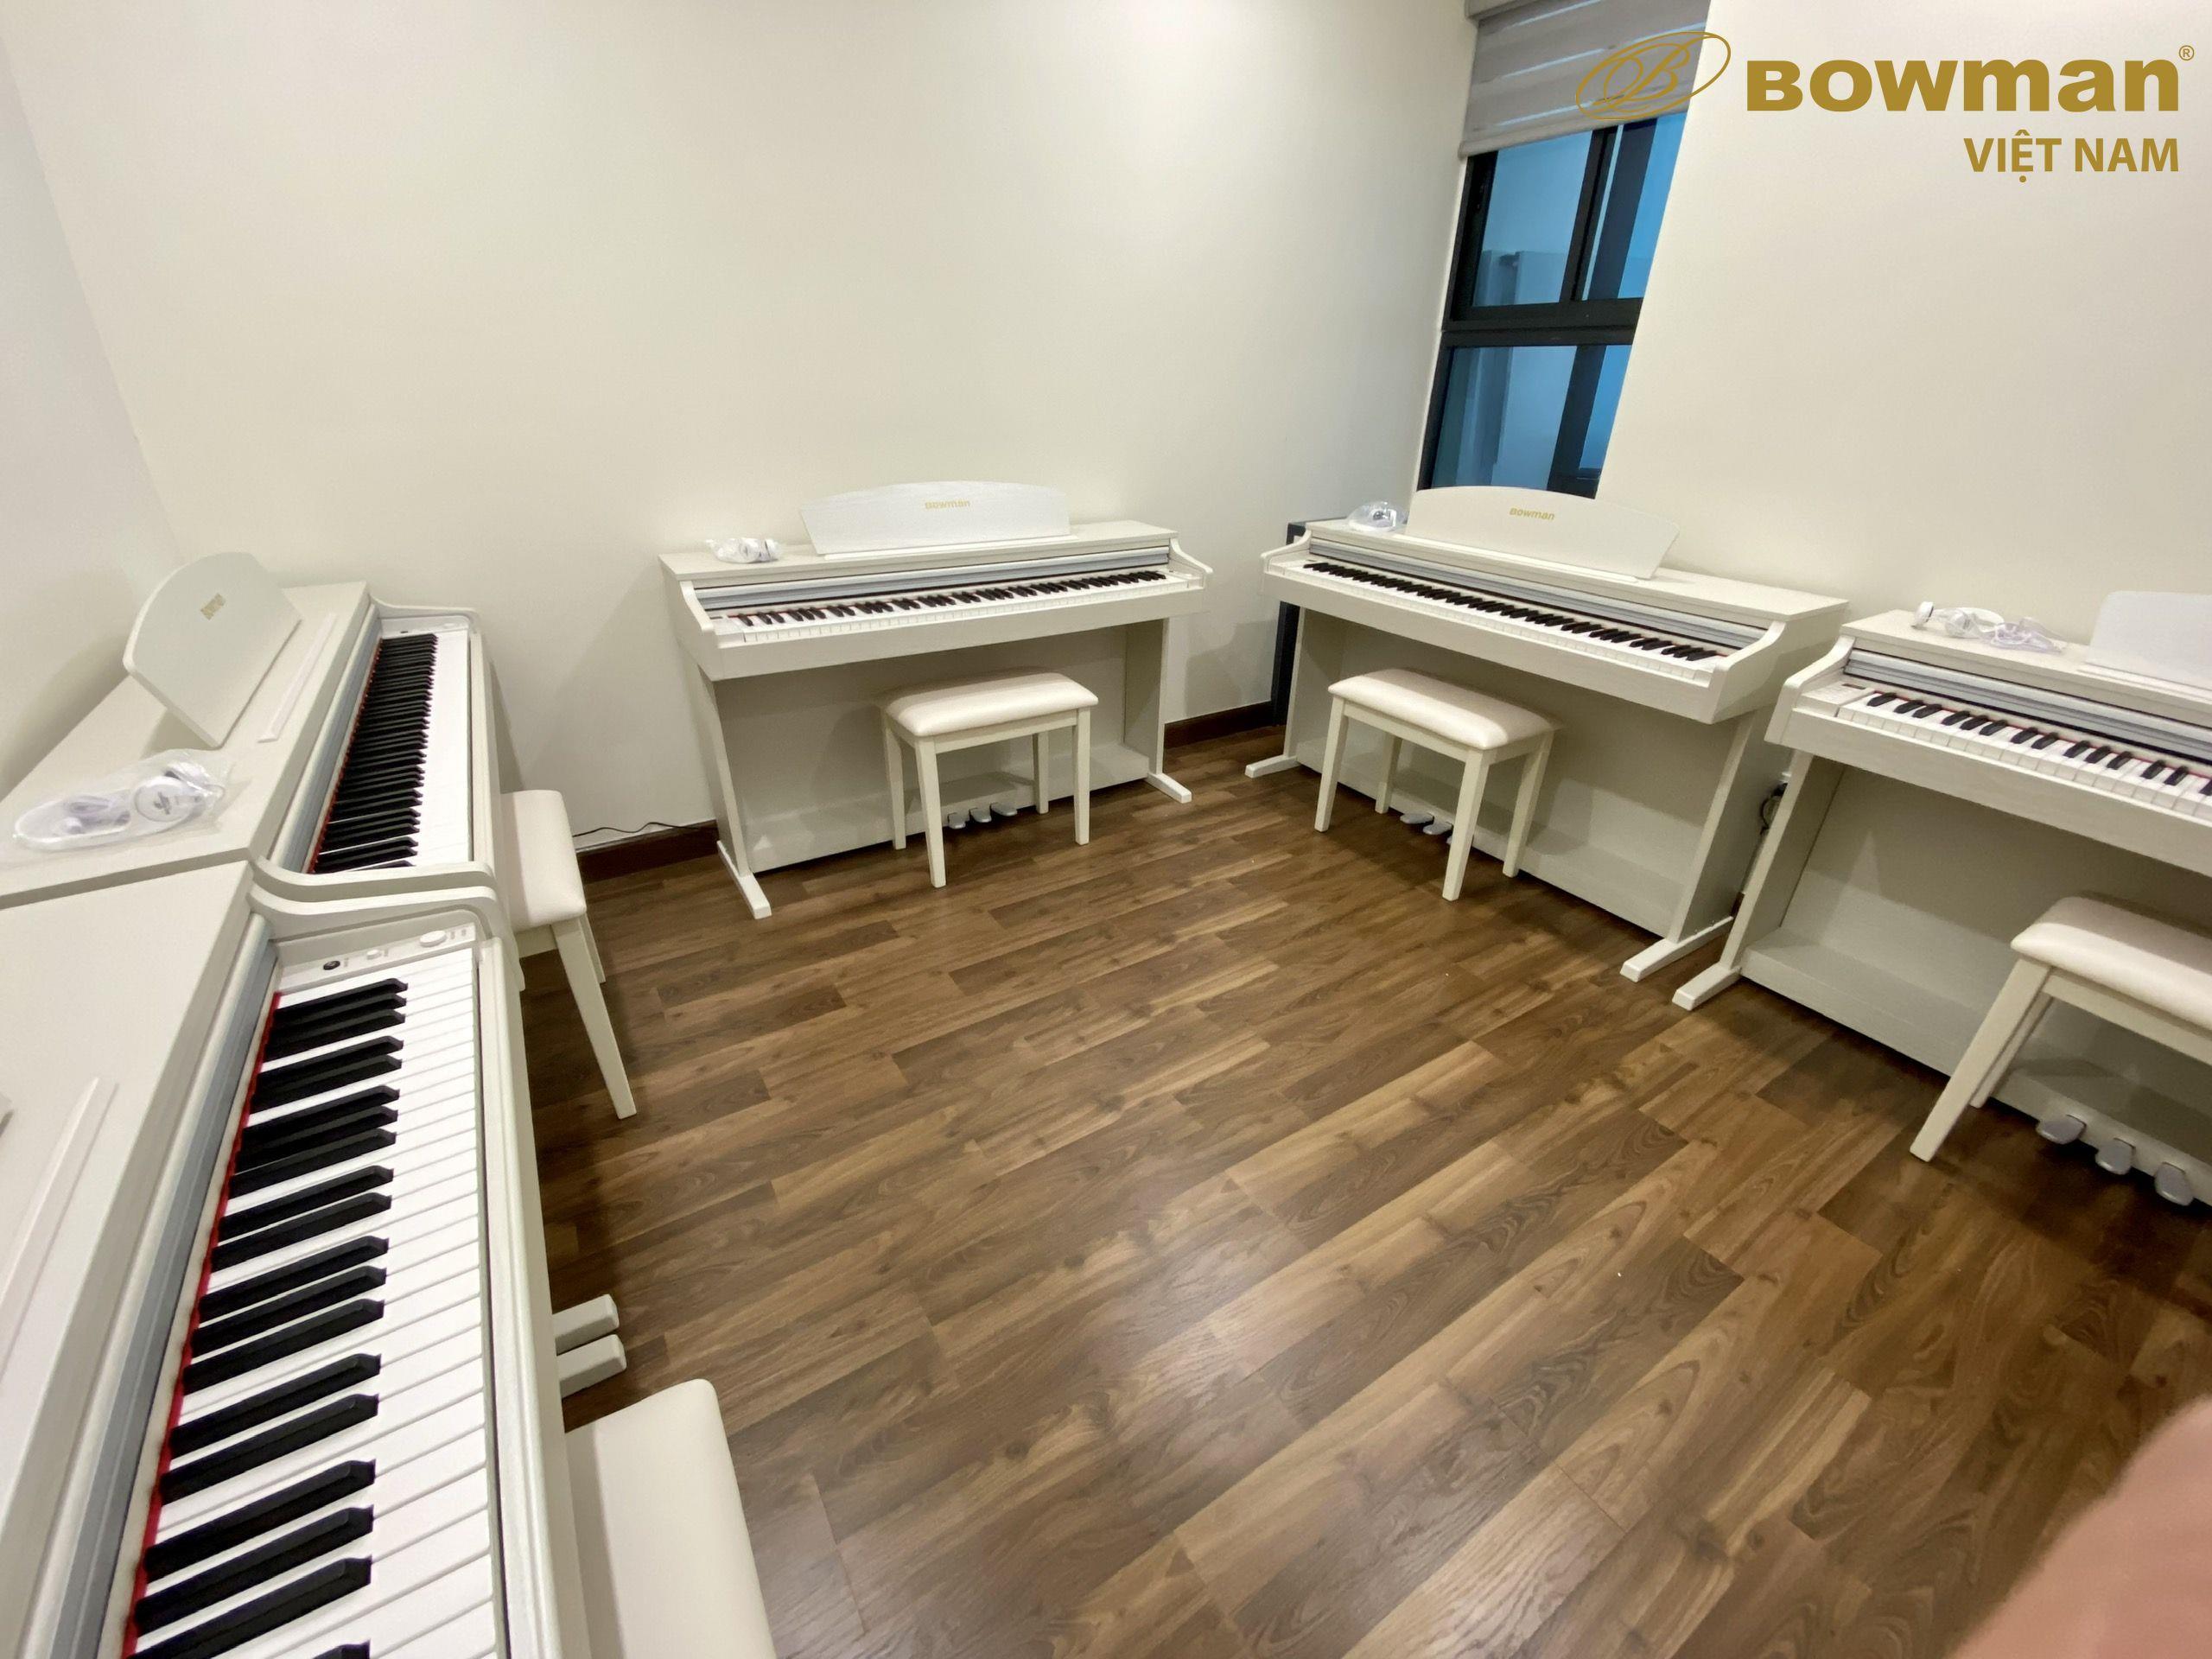 Trung tâm âm nhạc lựa chọn Bowman Piano trong giảng dạy âm nhạc chuyên nghiệp